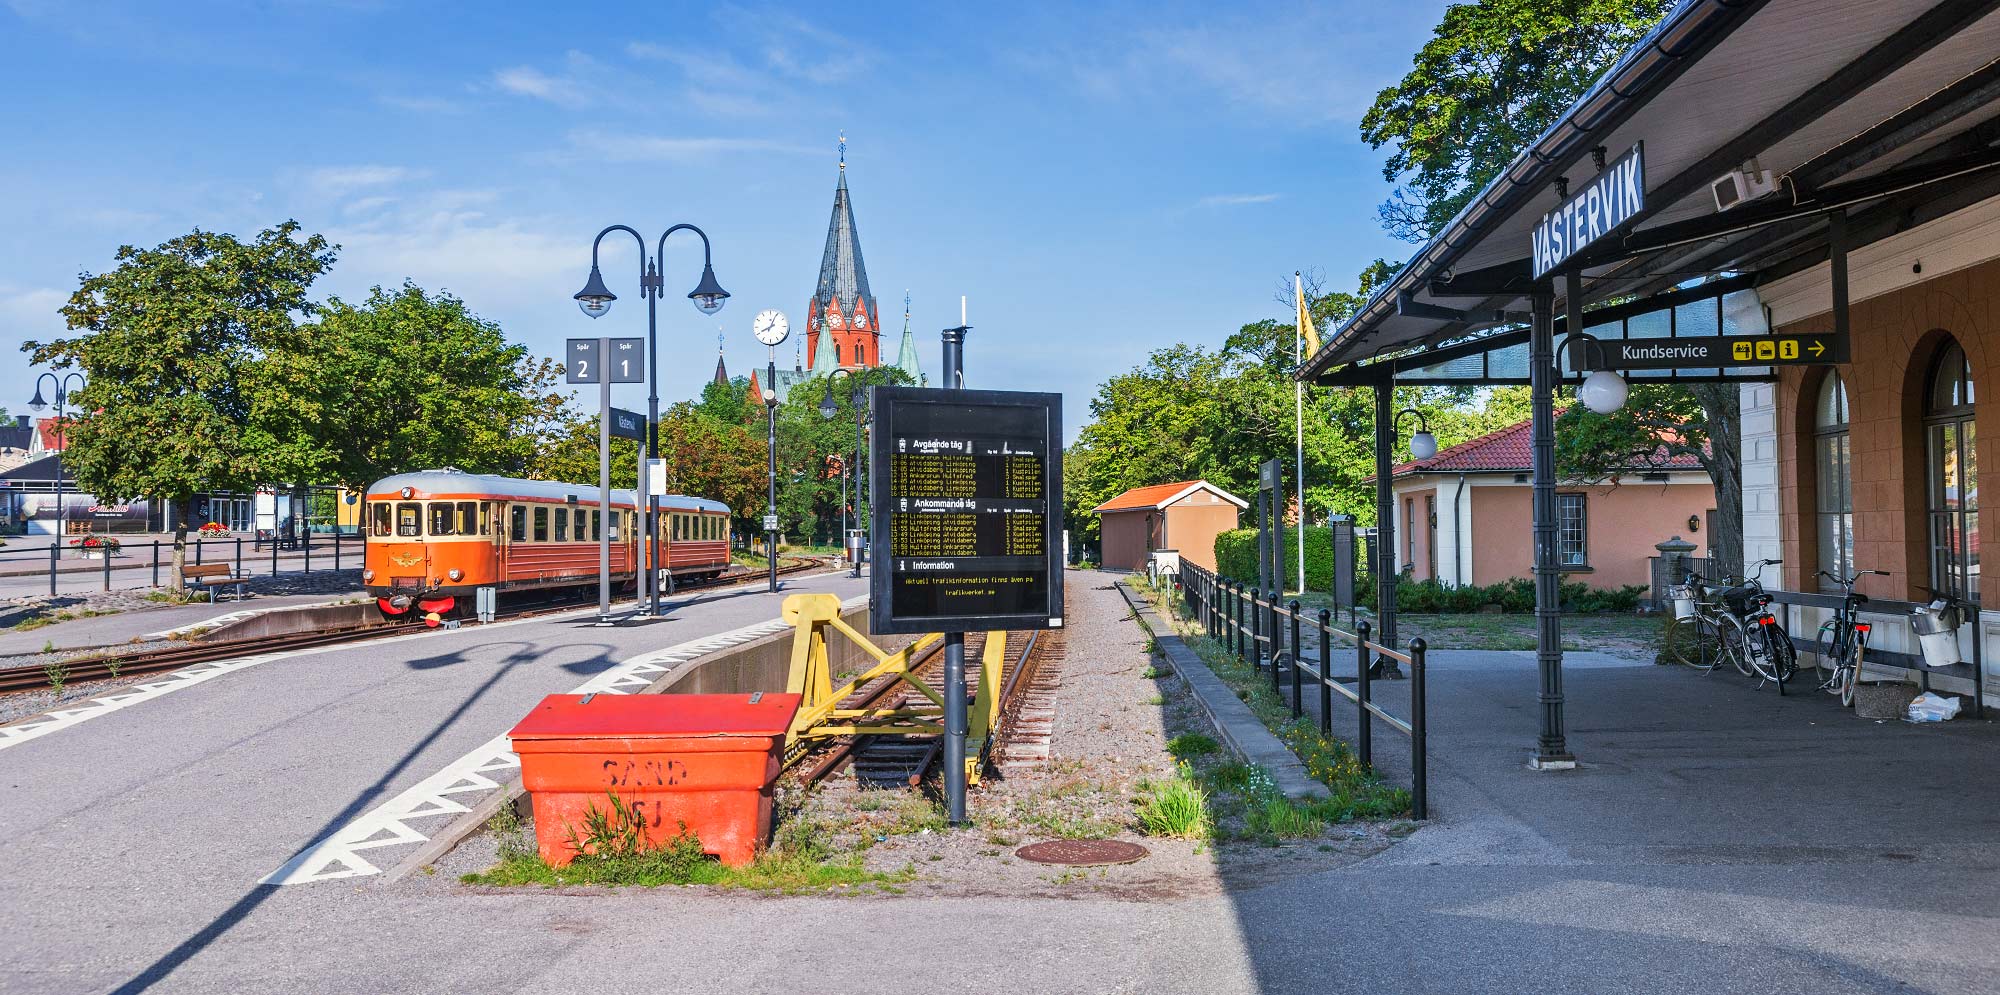 Bild: Smalspårets tåg mot Hultsfred inväntar avgång i Västervik 2014